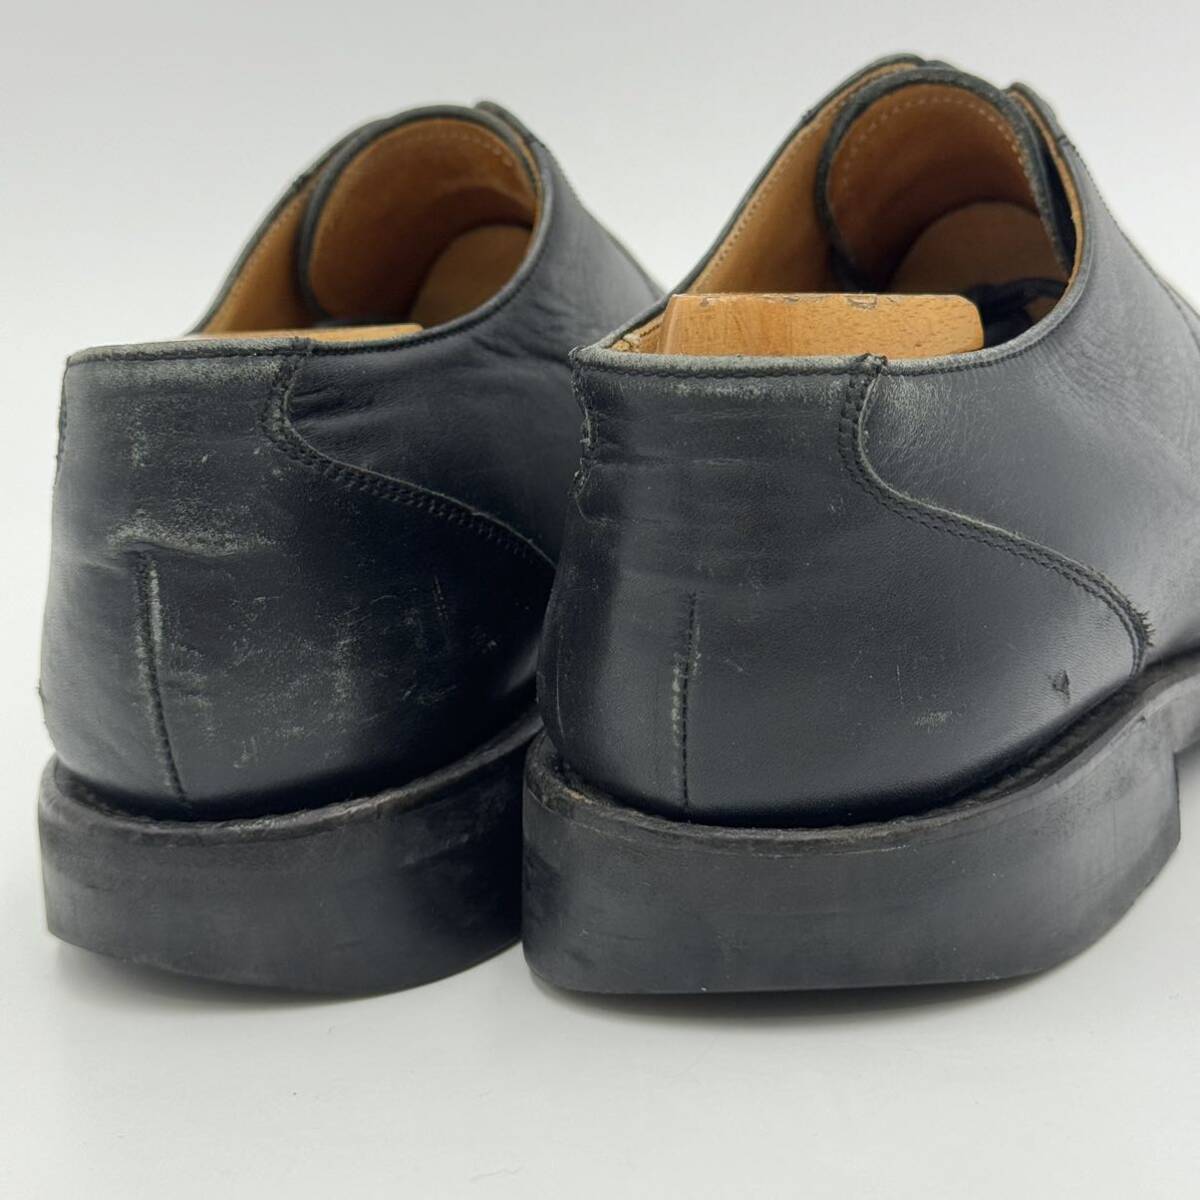 F ☆ 人気モデル!! '洗練されたデザイン' REGAL リーガル 本革 レザー ビジネスシューズ 革靴 Vチップ 外羽根式 size:25.0cm メンズ 紳士靴の画像3